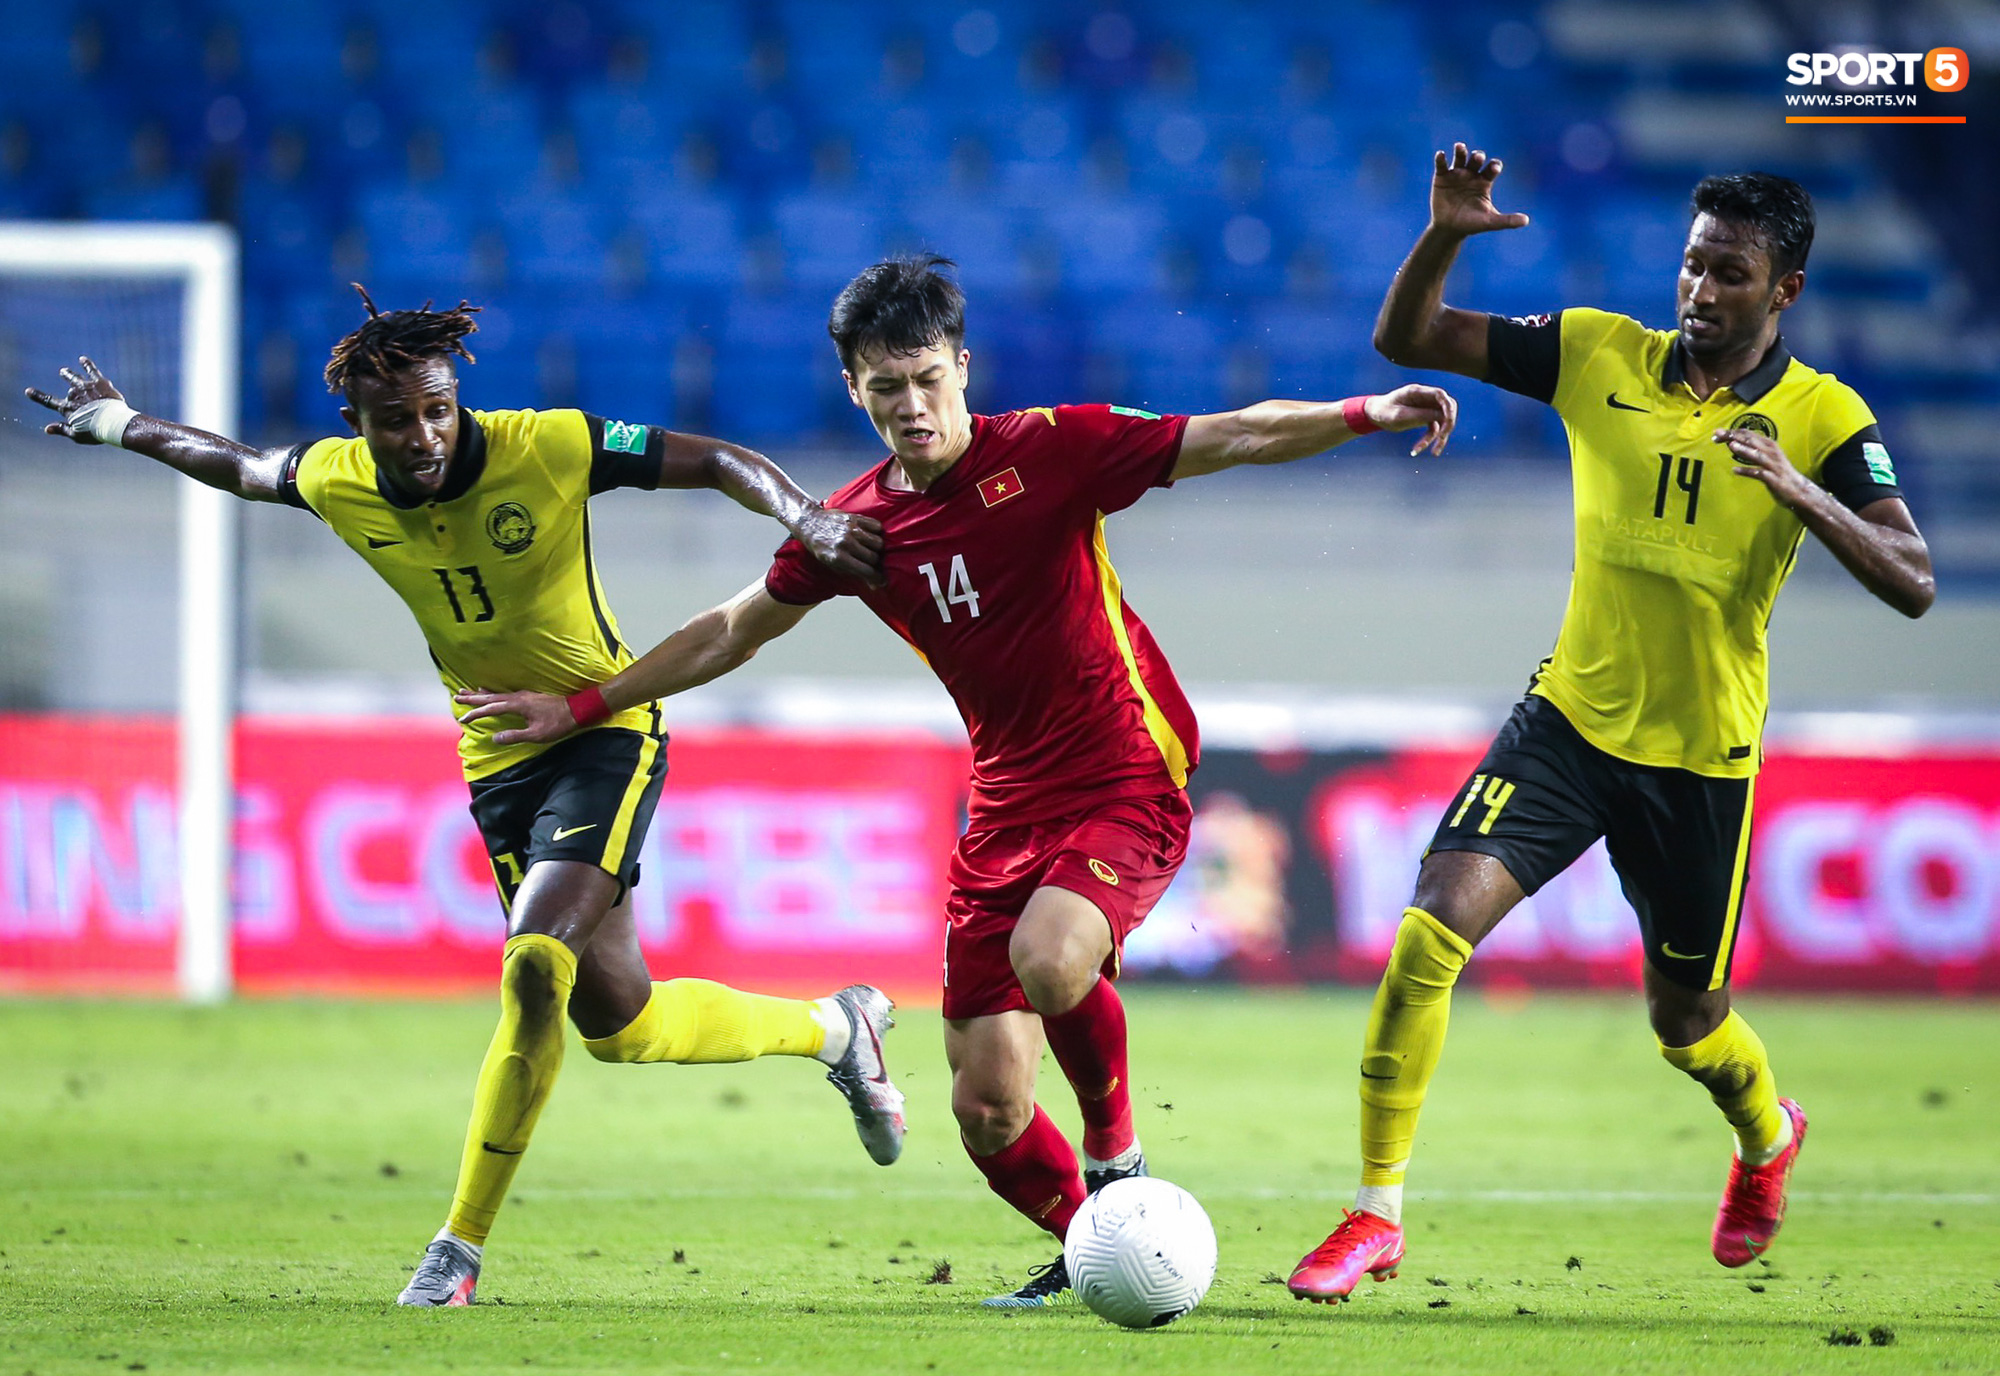 Thống kê ấn tượng: Quang Hải tạo ra nhiều cơ hội ghi bàn nhất vòng bảng AFF Cup 2020 - Ảnh 2.